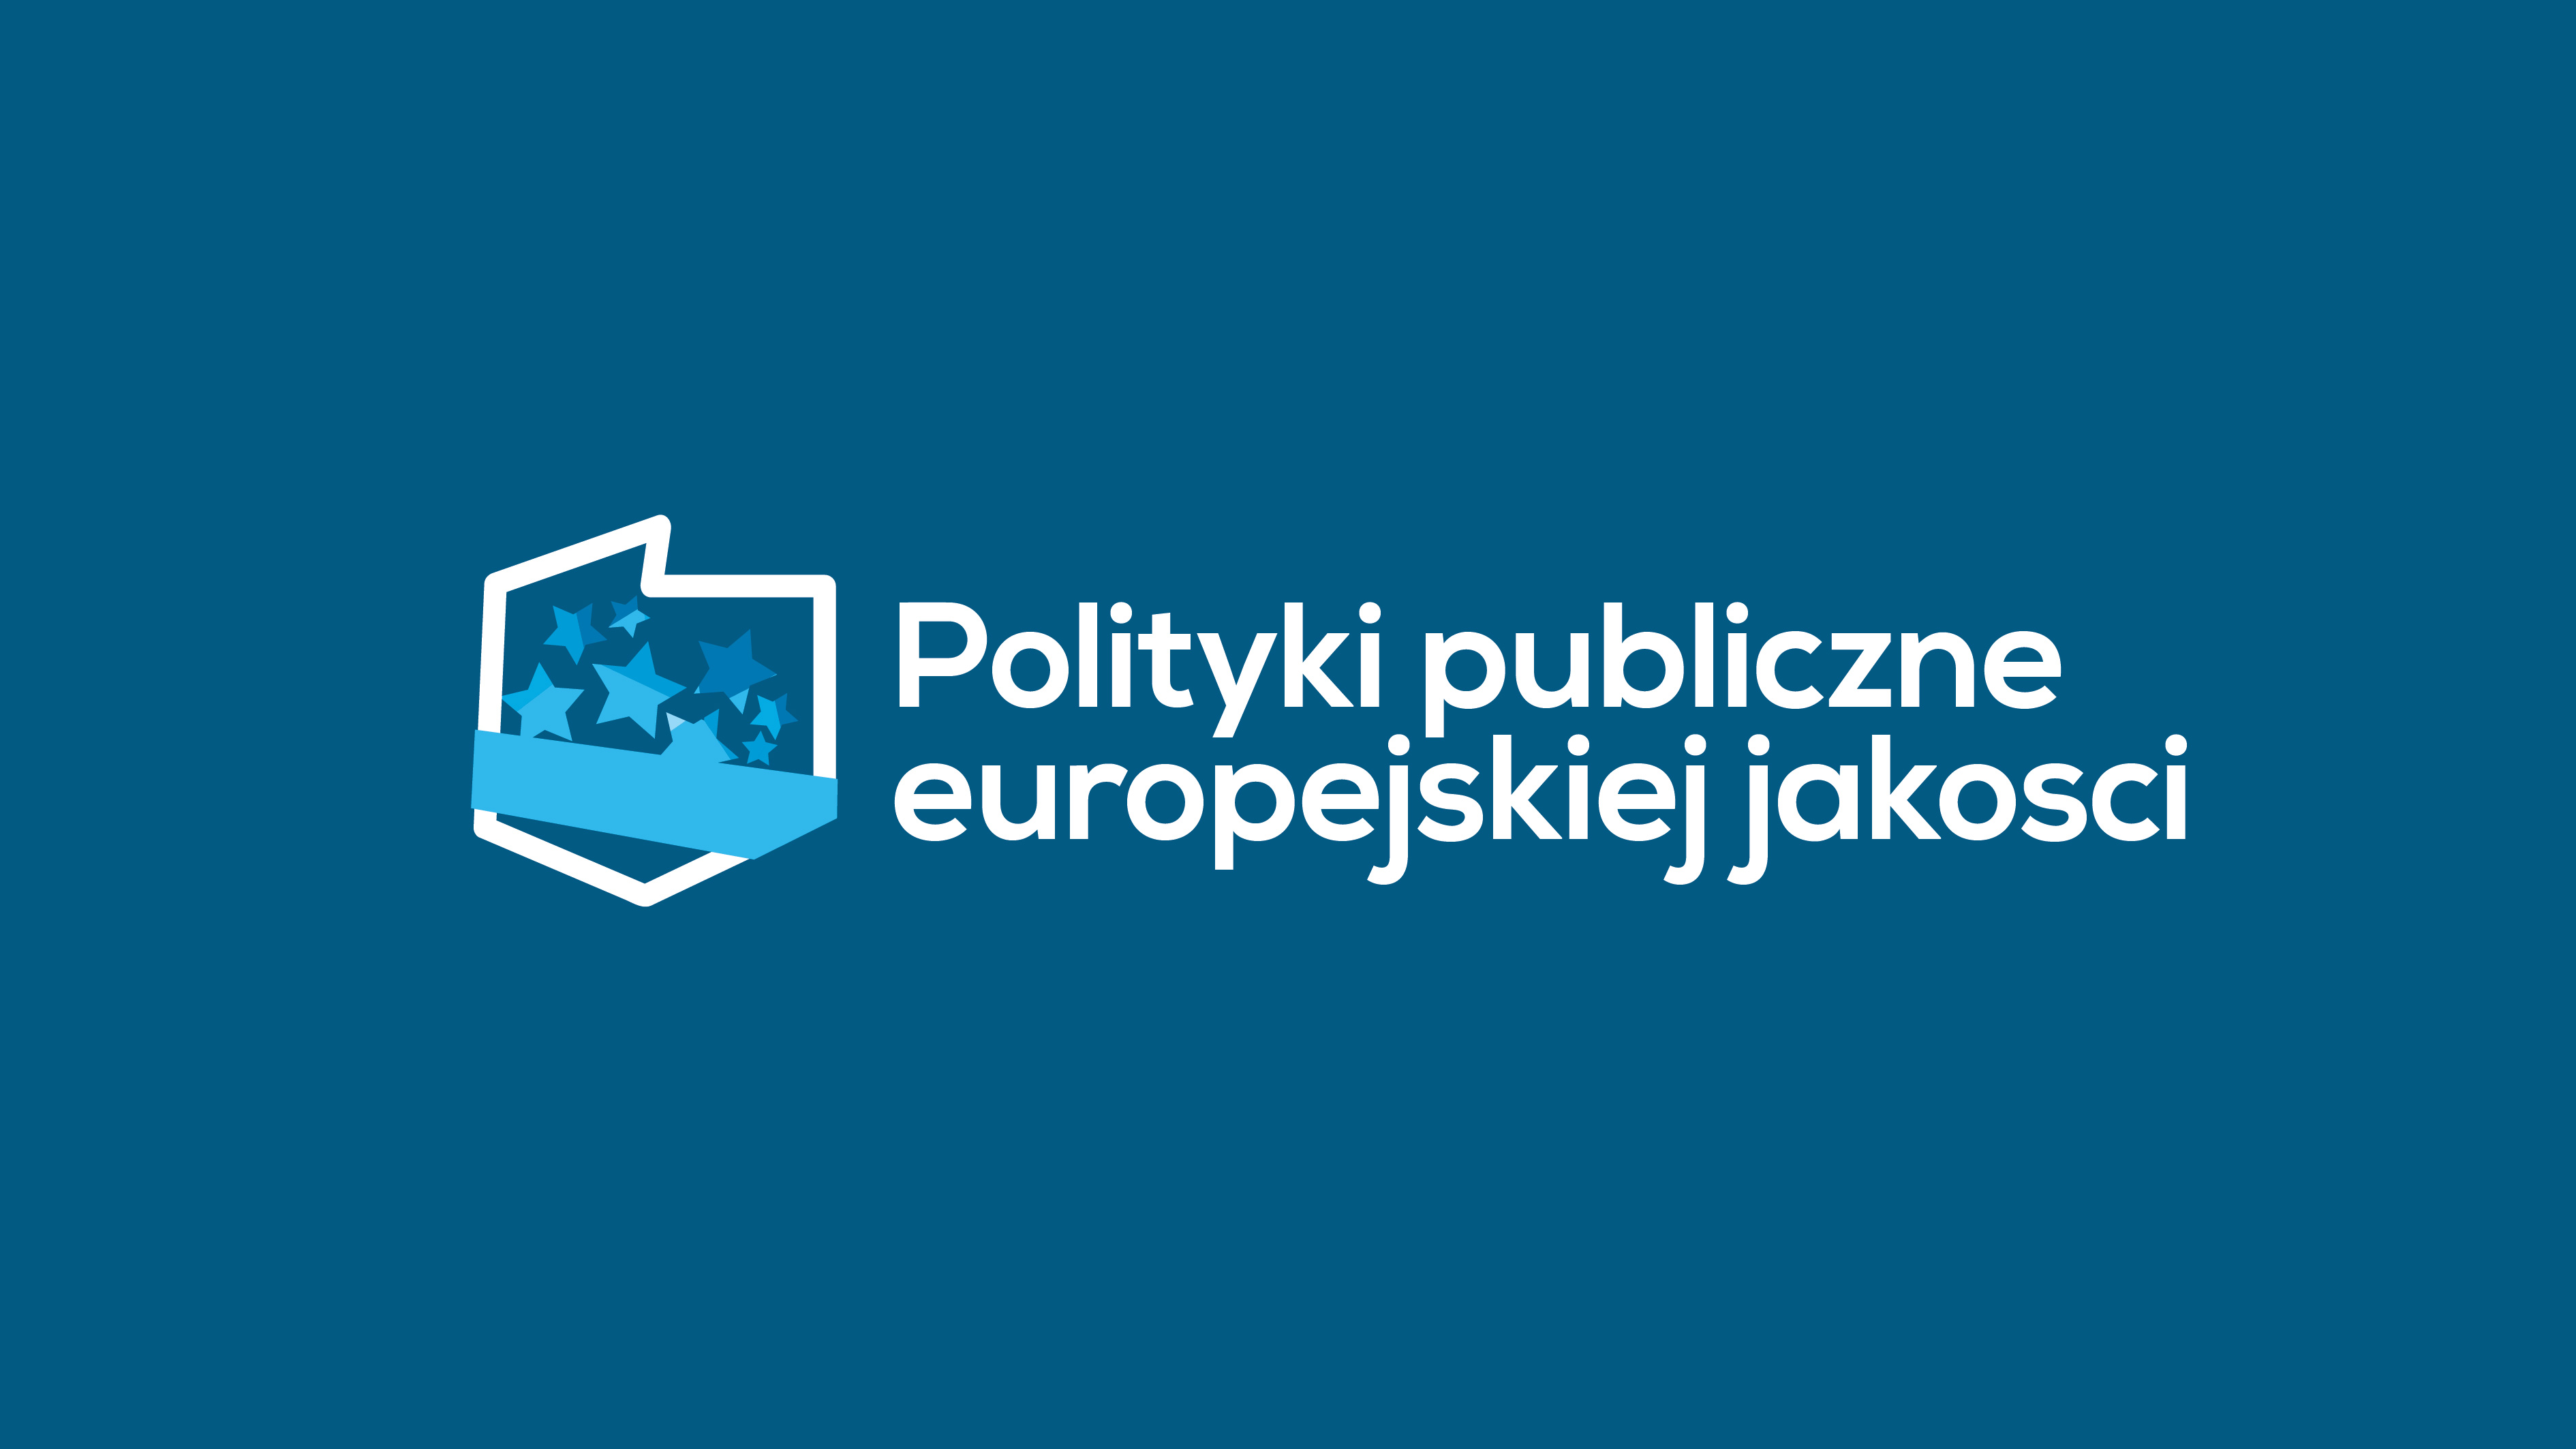 Polityki publiczne europejskiej jakości